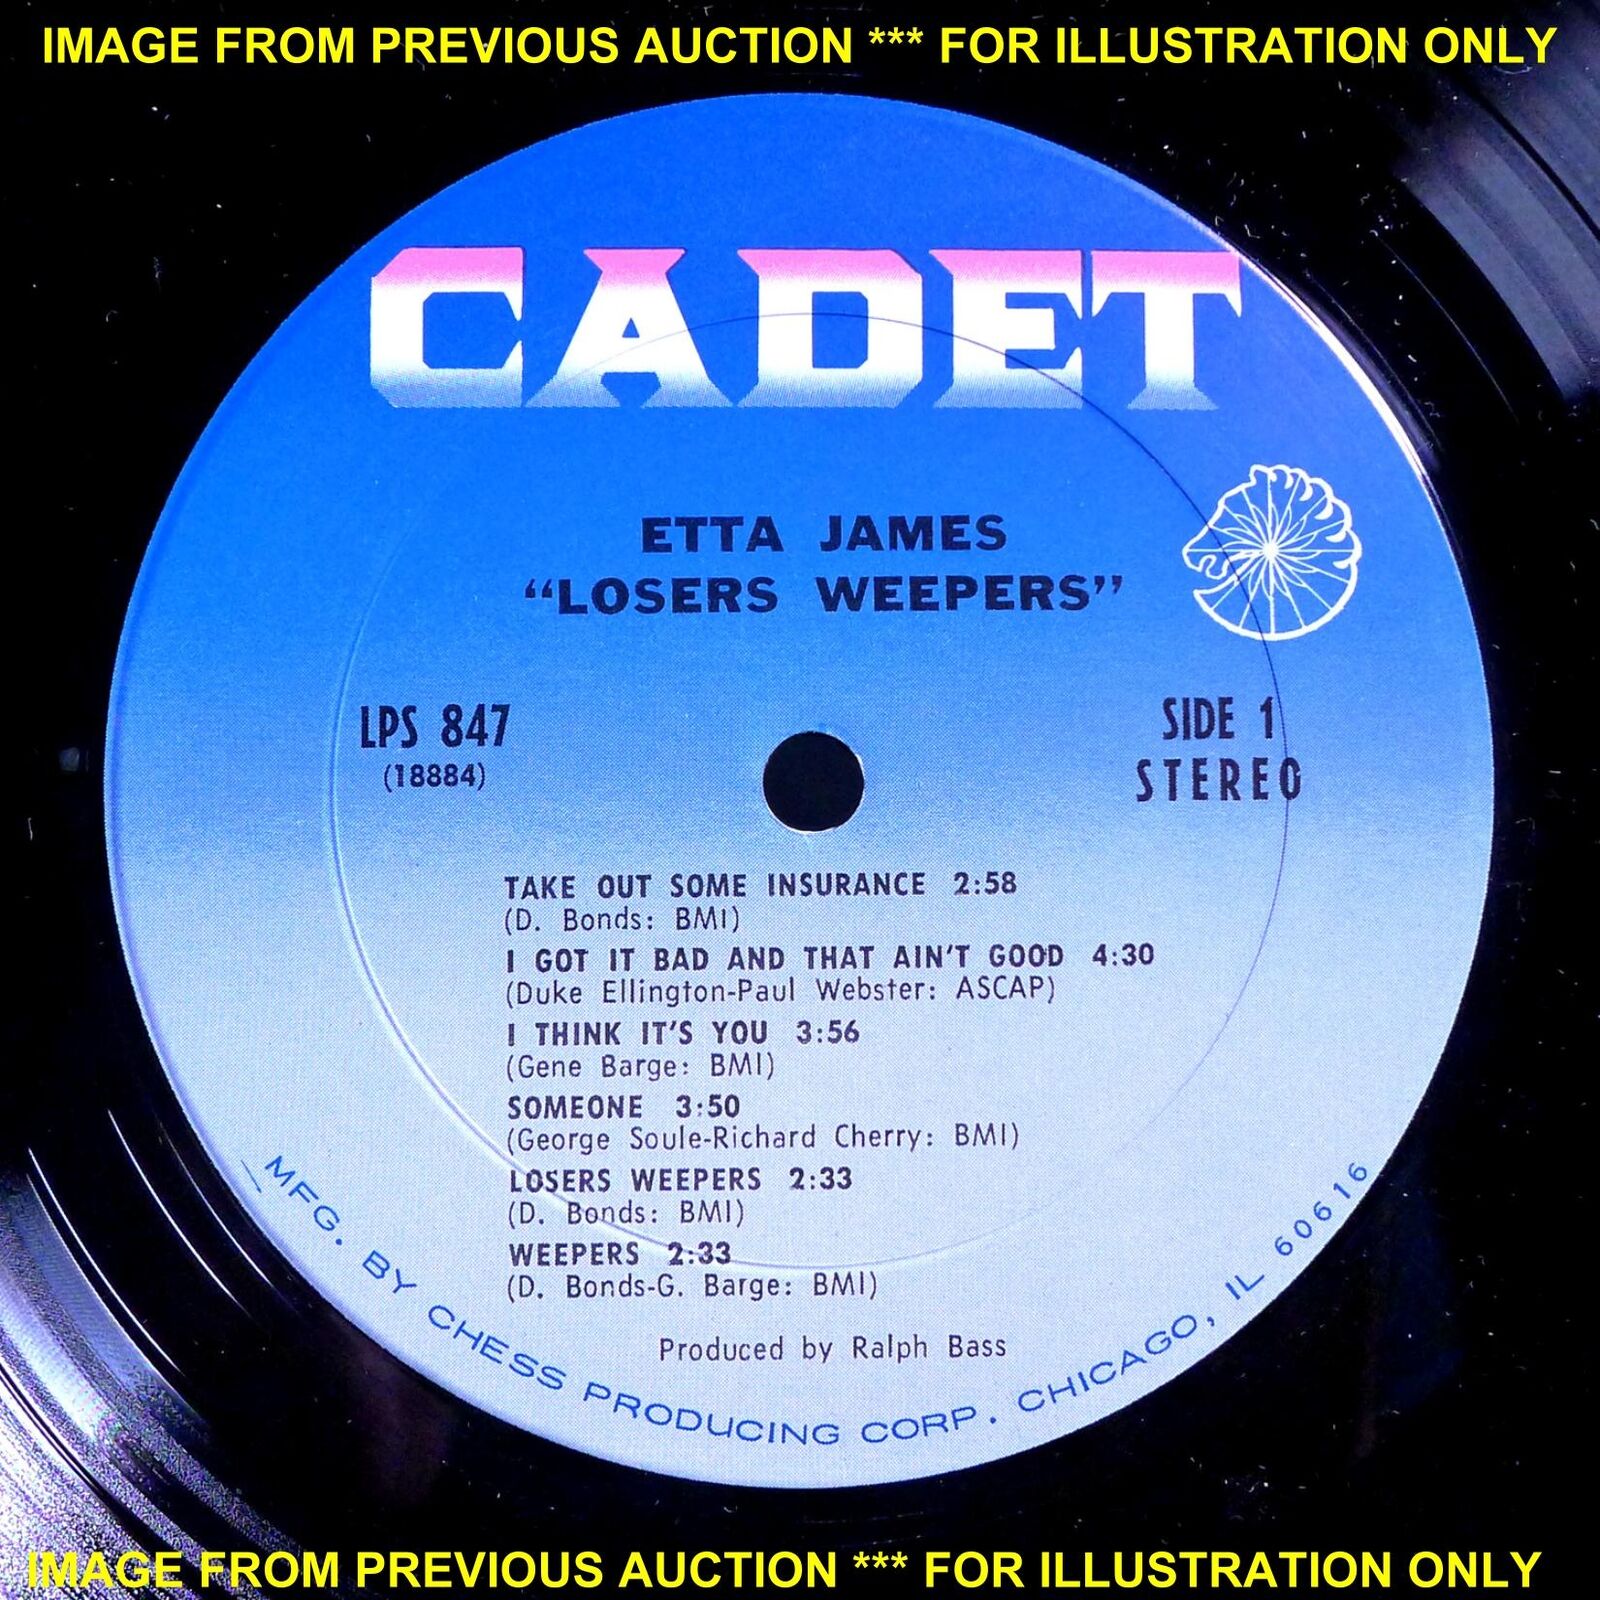 Pic 3 ETTA JAMES LOSERS WEEPERS ULTRA-RARE STILL SEALED ORIGINAL '69 CADET LP CADET